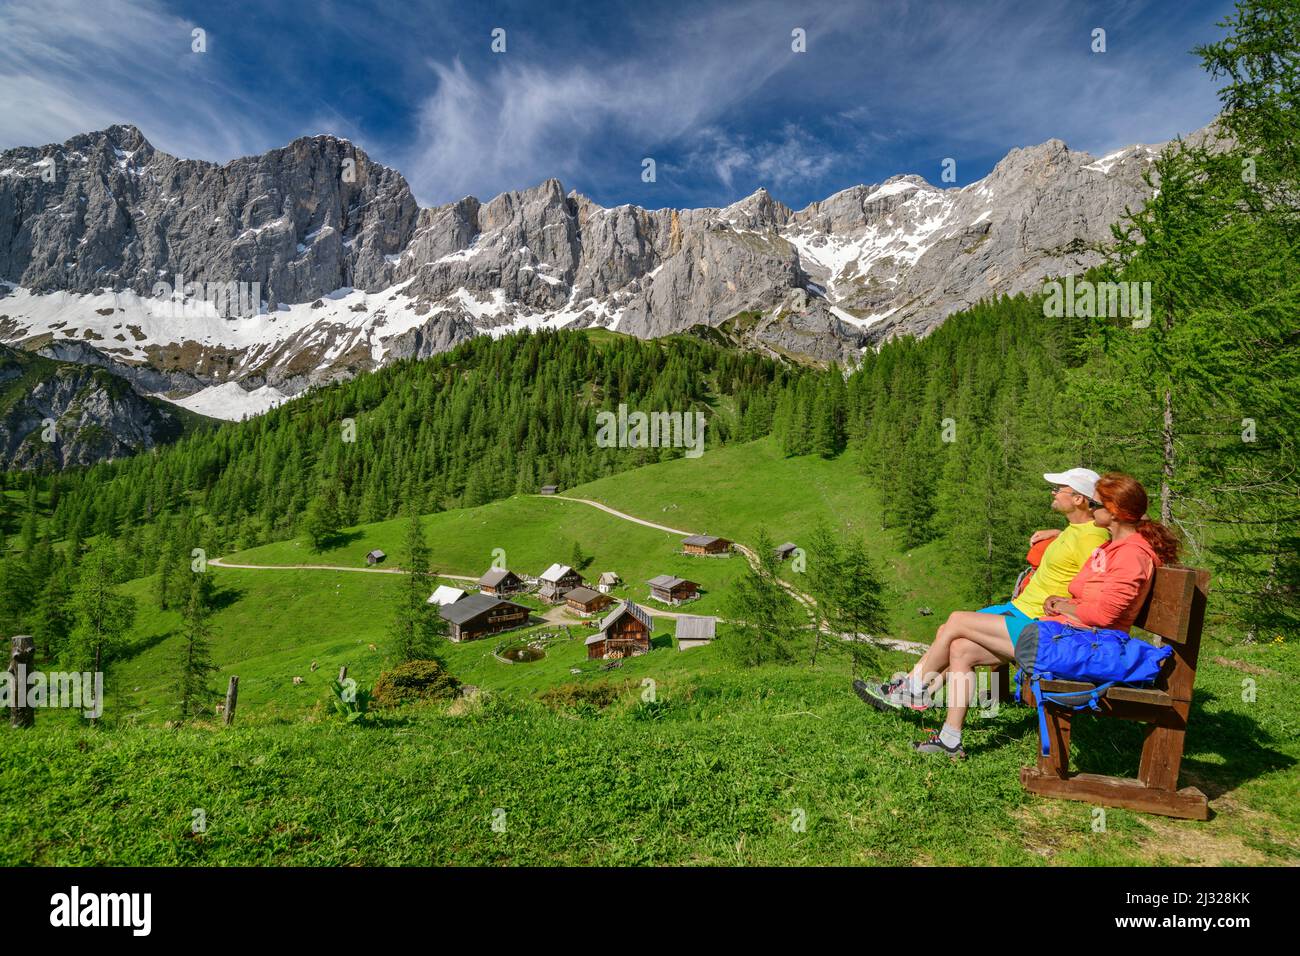 Homme et femme en randonnée s'assoient sur le banc et regardent Neustattalm et Dachstein, Neustattalm, Dachstein, Hallstatt, classé au patrimoine mondial de l'UNESCO, Styrie, Autriche Banque D'Images